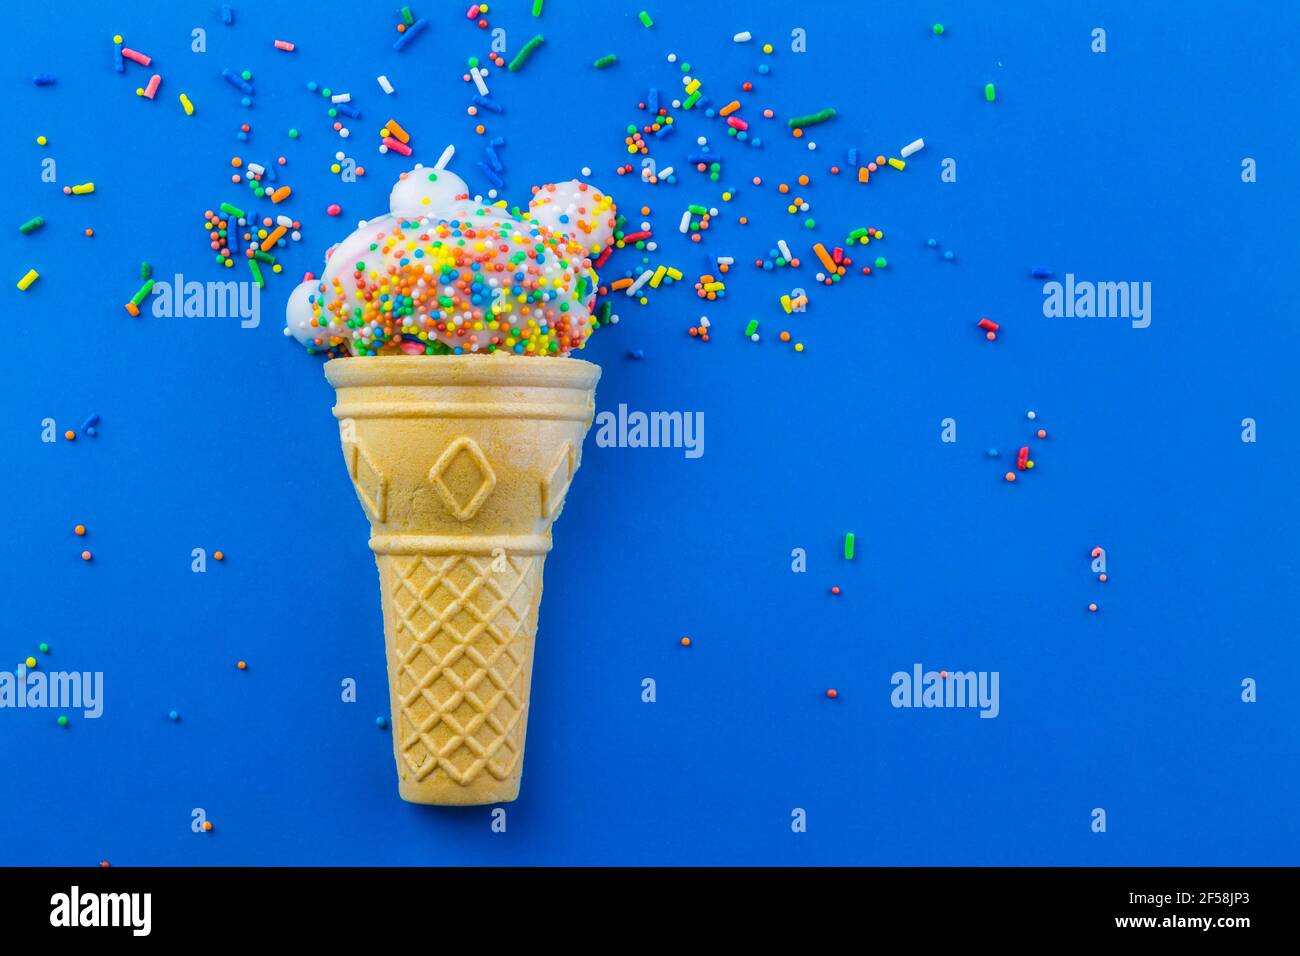 Eiskegel mit kleiner Tasse Kuchen mit Zuckerguss verziert Und runde Streuseln mit Streuseln verstreut und isoliert auf blau Hintergrund - Geburtstag BA Stockfoto